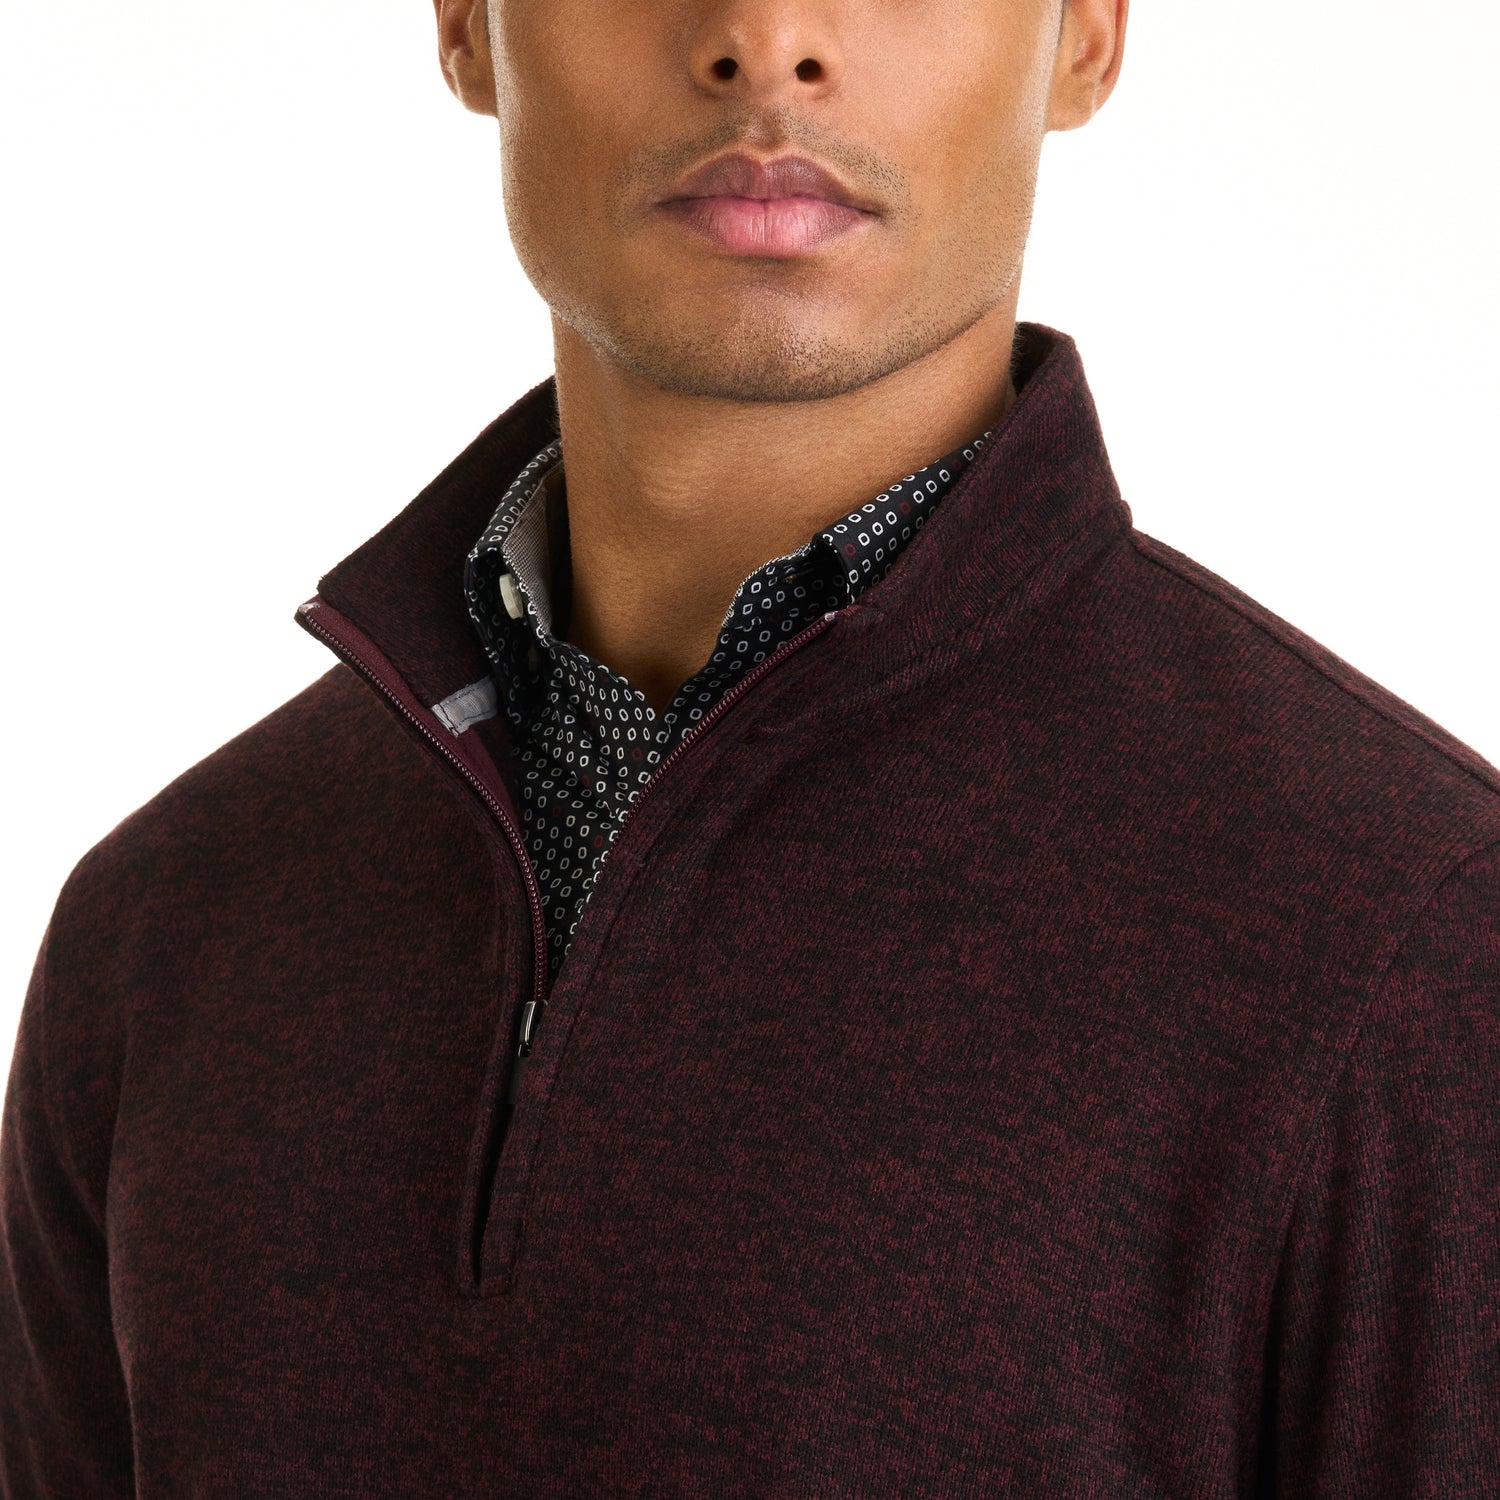 Essential Sweater Fleece Quarter Zip Pullover – Regular Fit